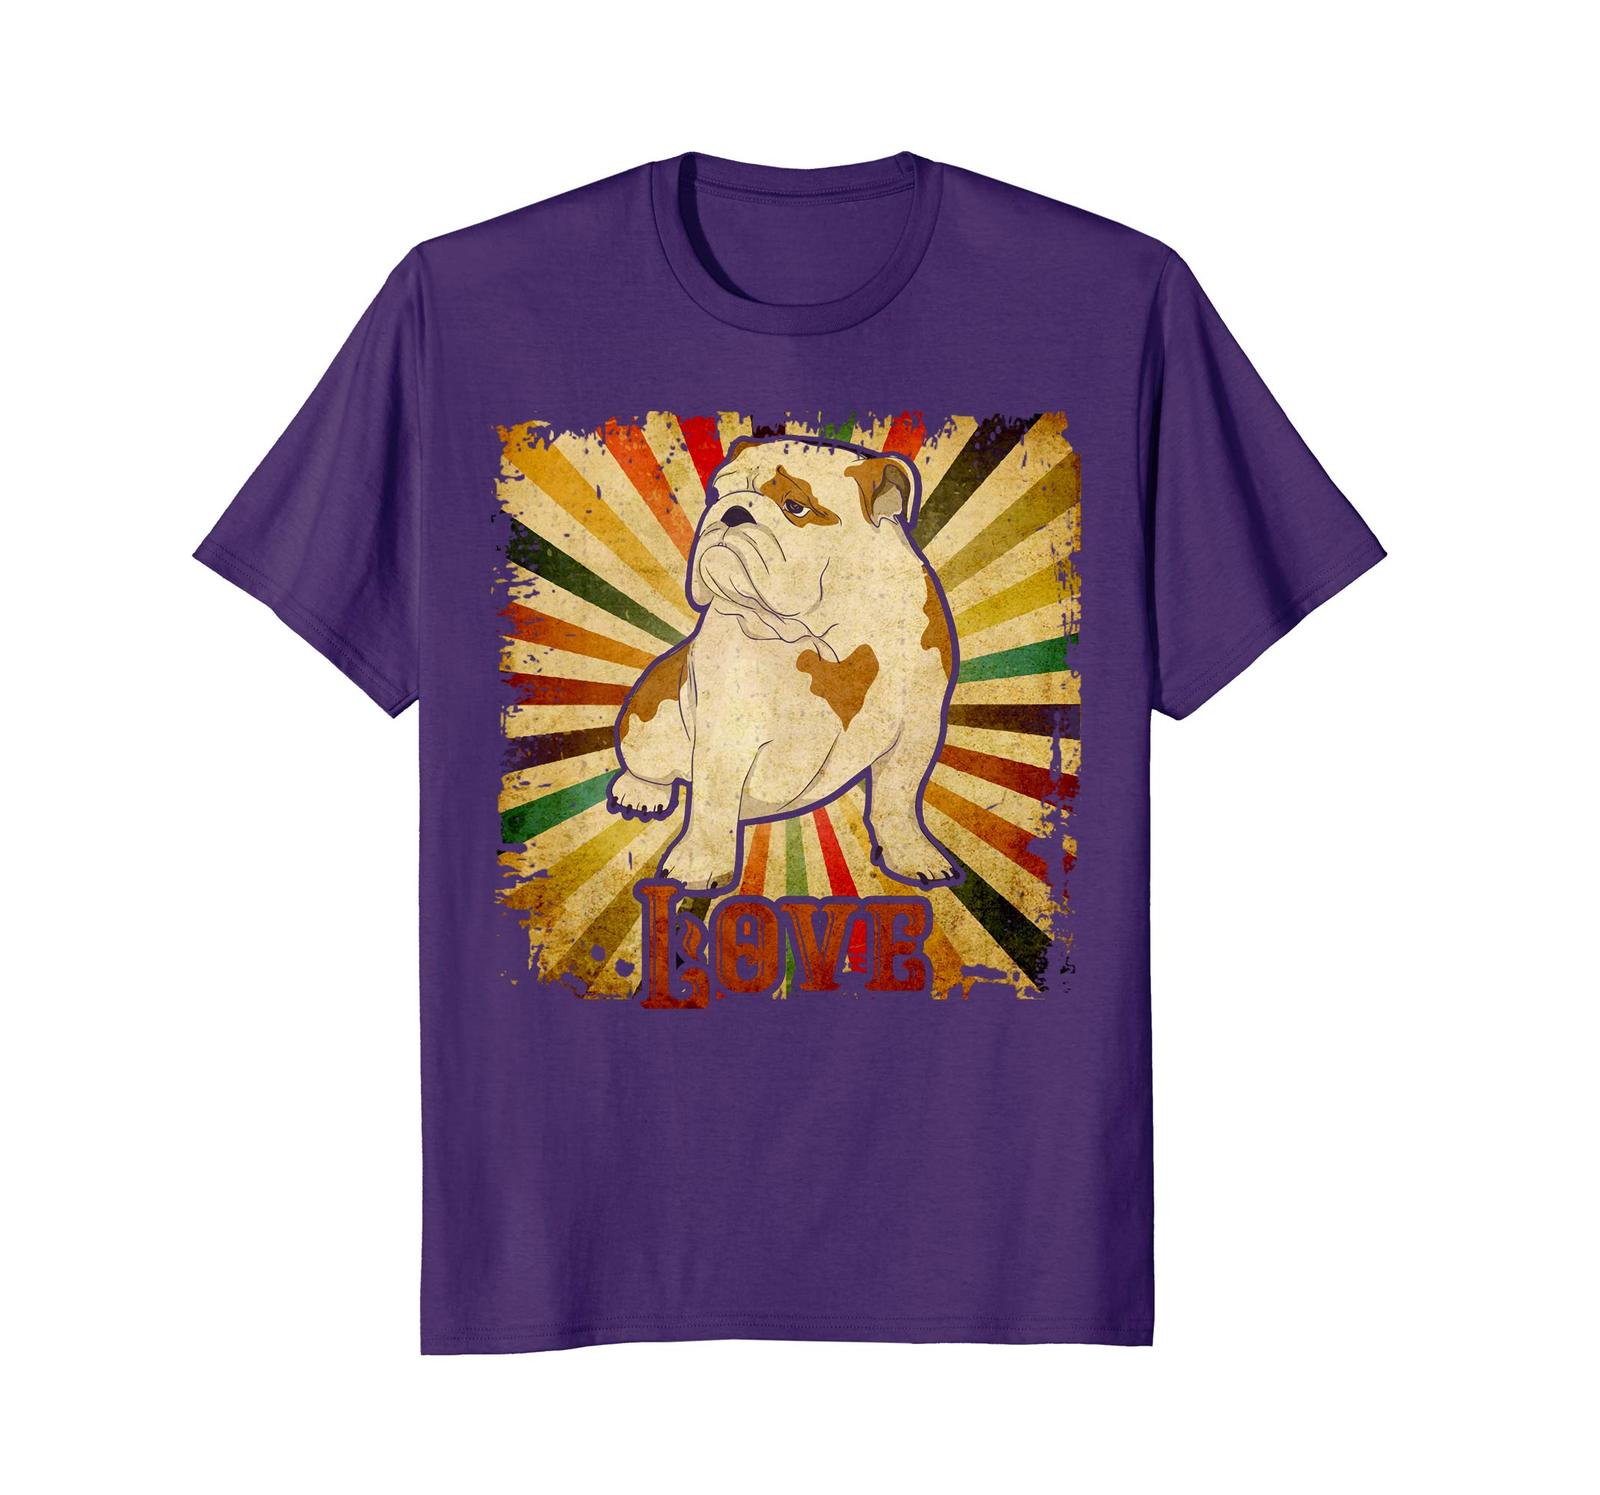 Dog Fashion - English Bulldog Tshirt Vintage English Bulldog Retro ...